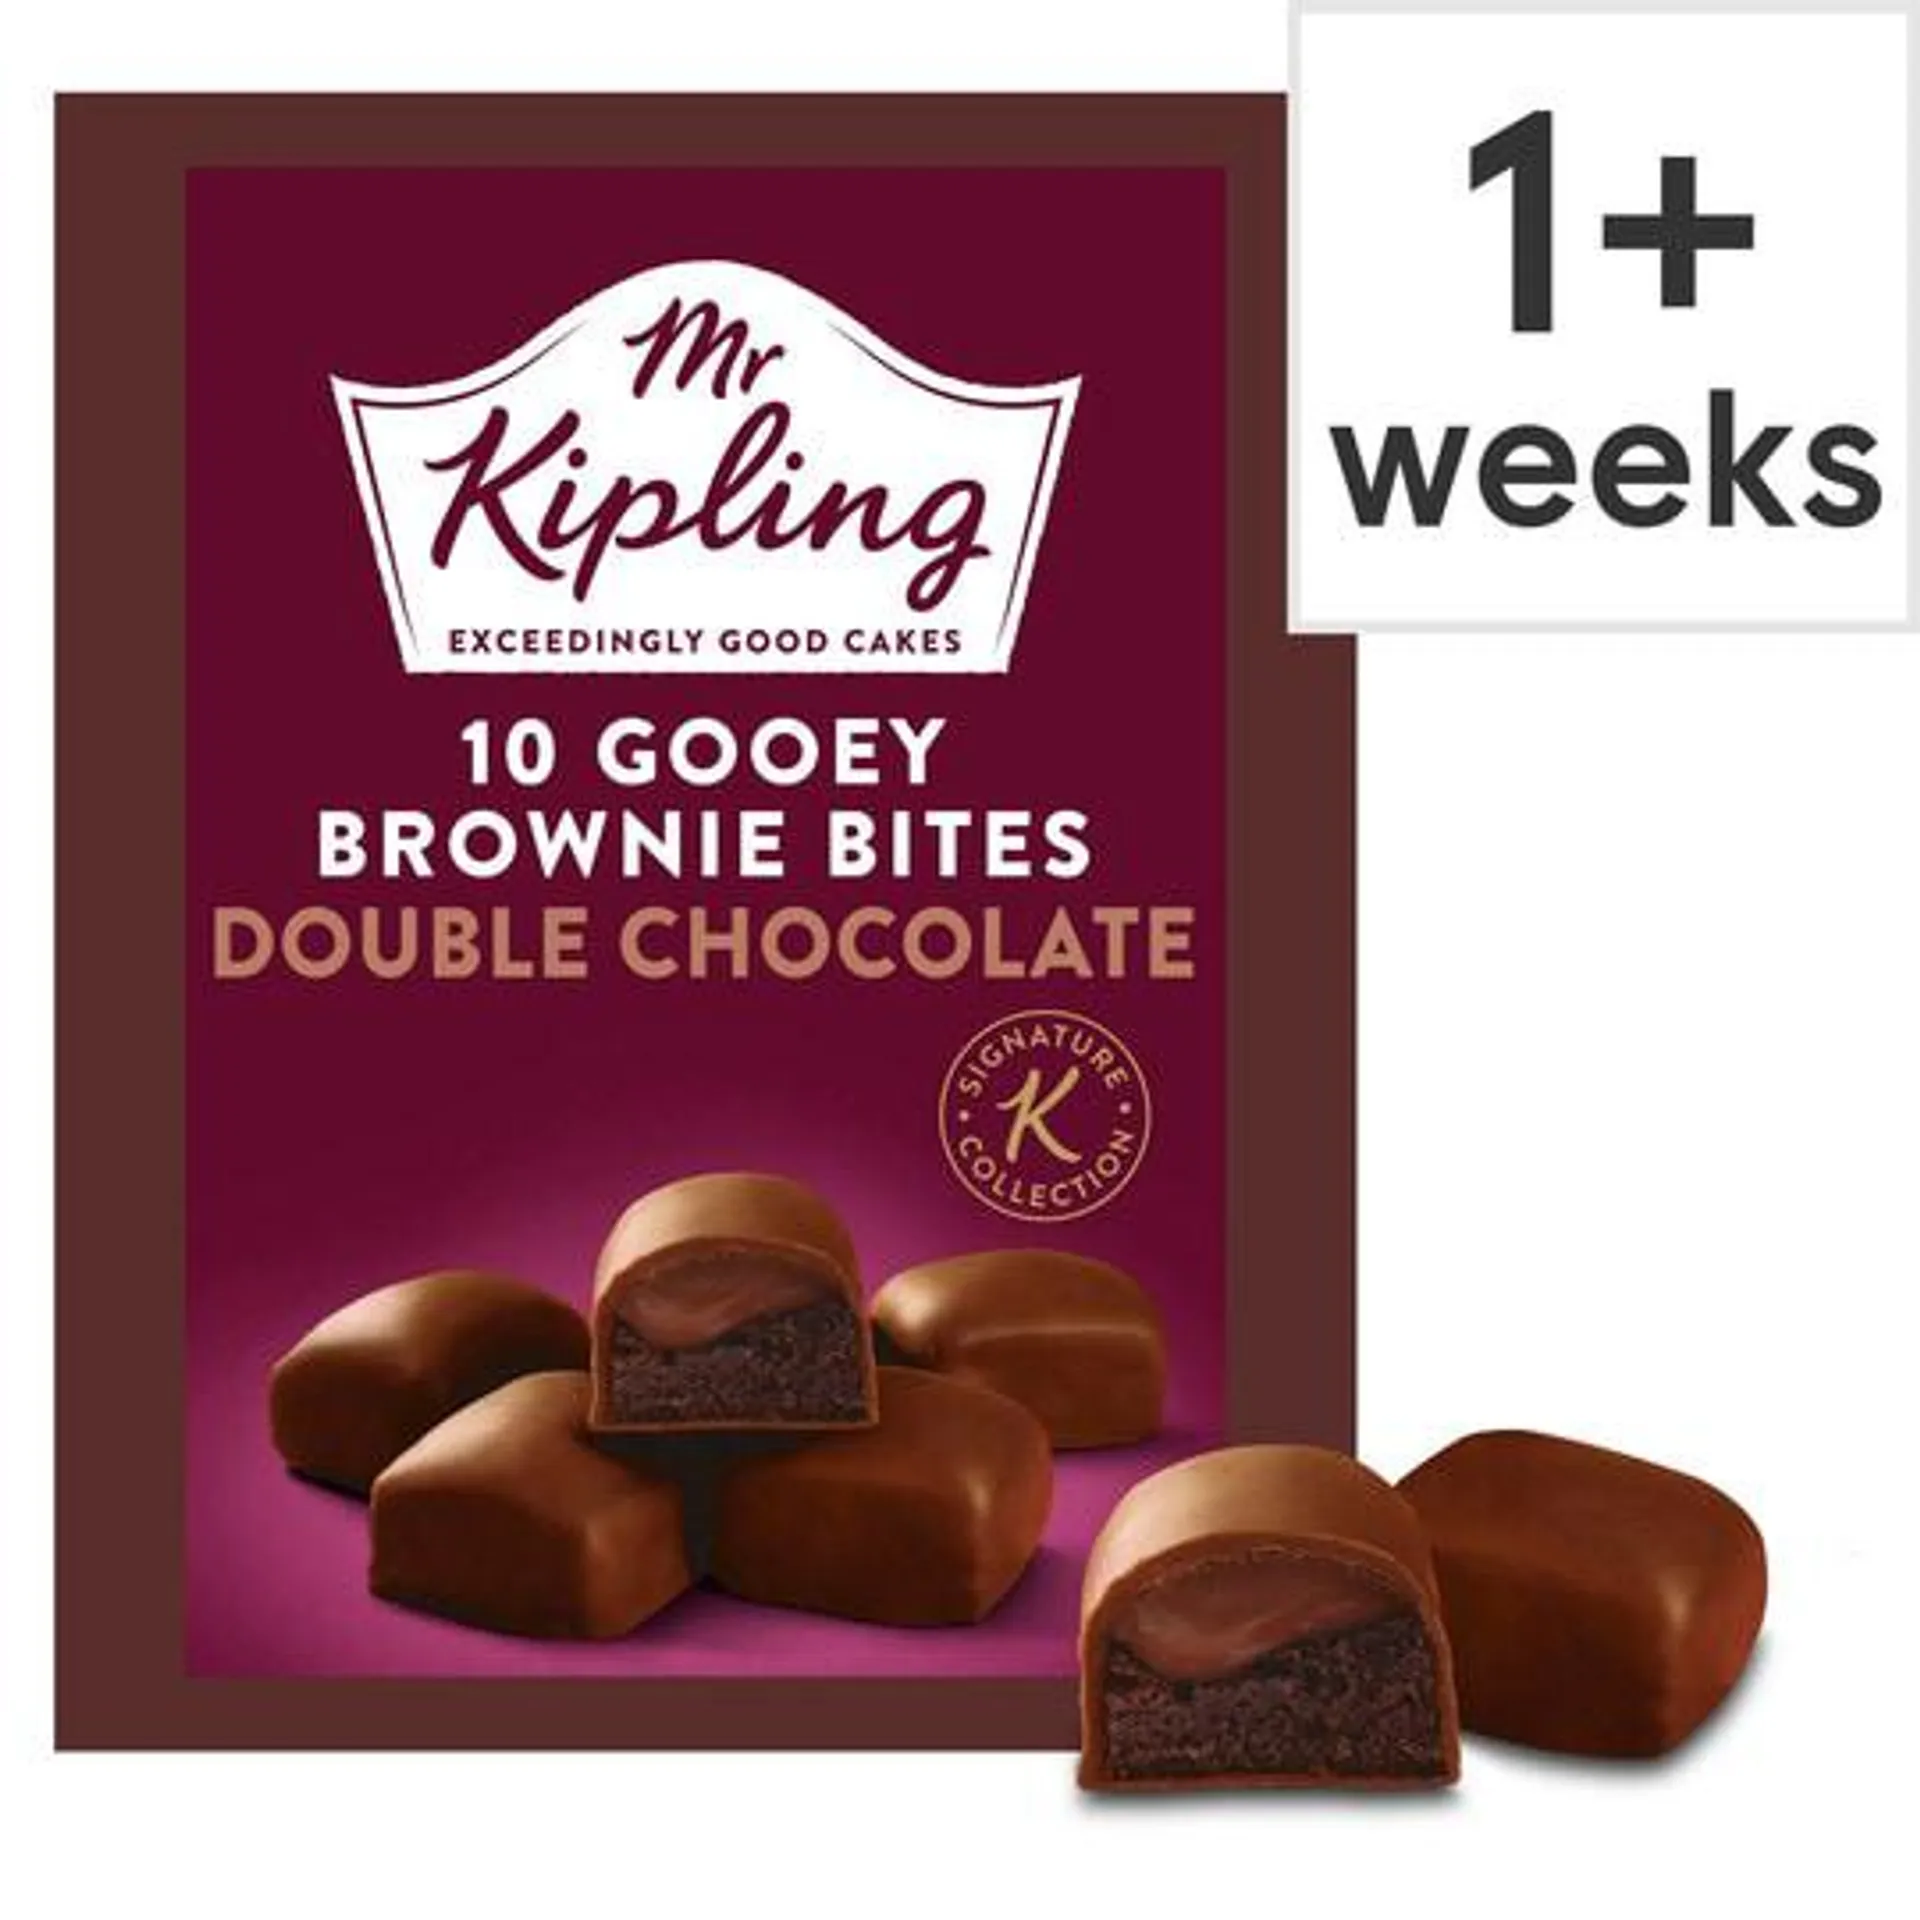 Mr Kipling Gooey Brownie Bites Double Chocolate 10 Pack